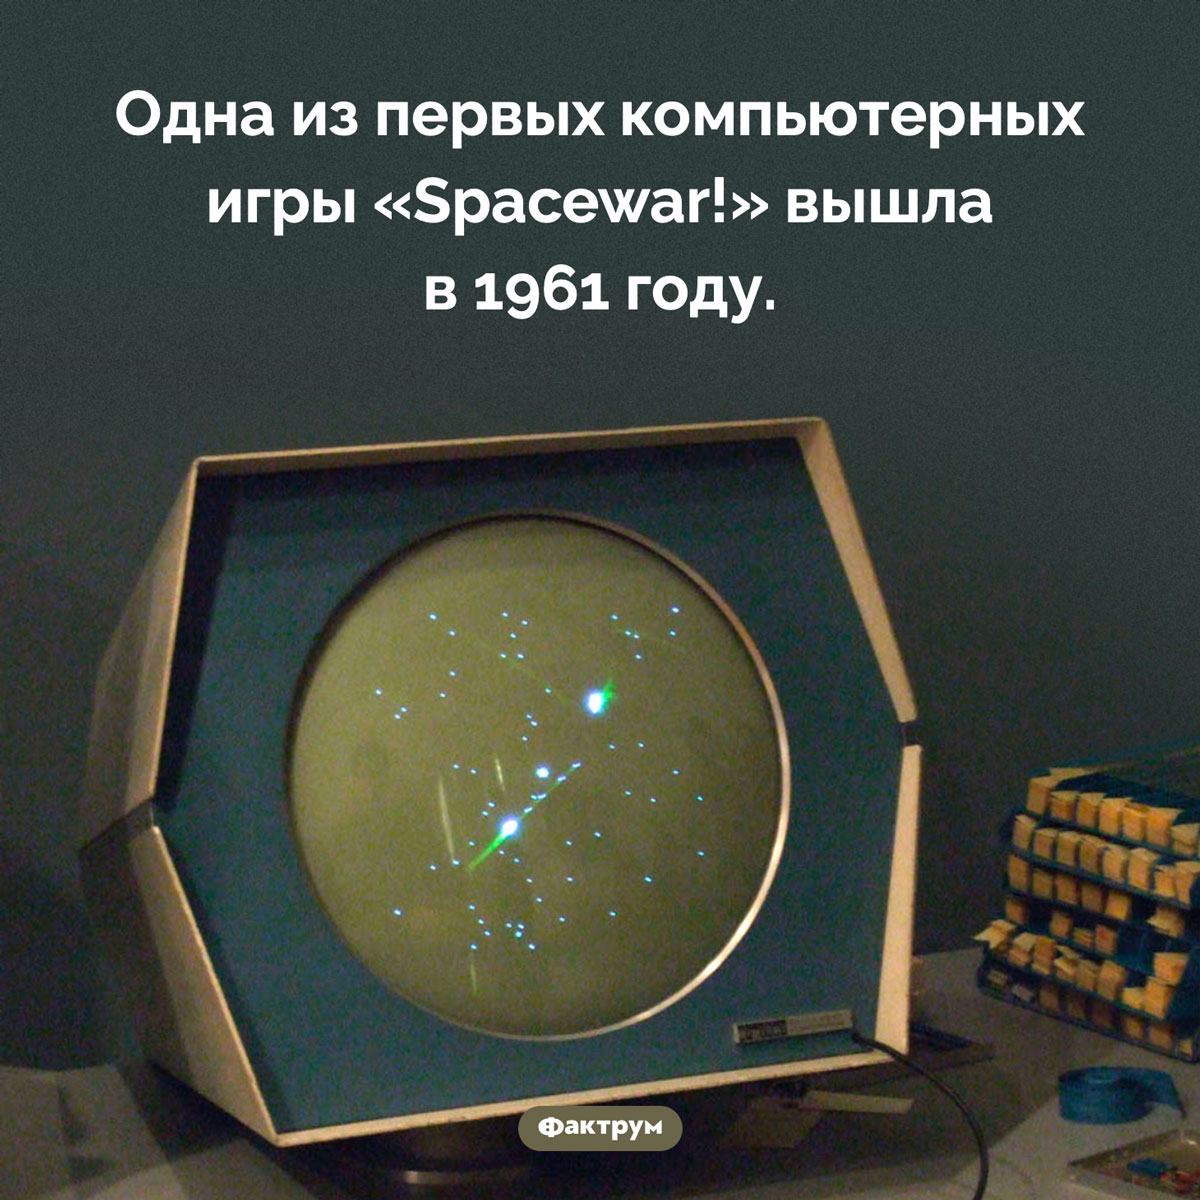 Когда появились первые компьютерные игры. Одна из первых компьютерных игры «Spacewar!» вышла в 1961 году.